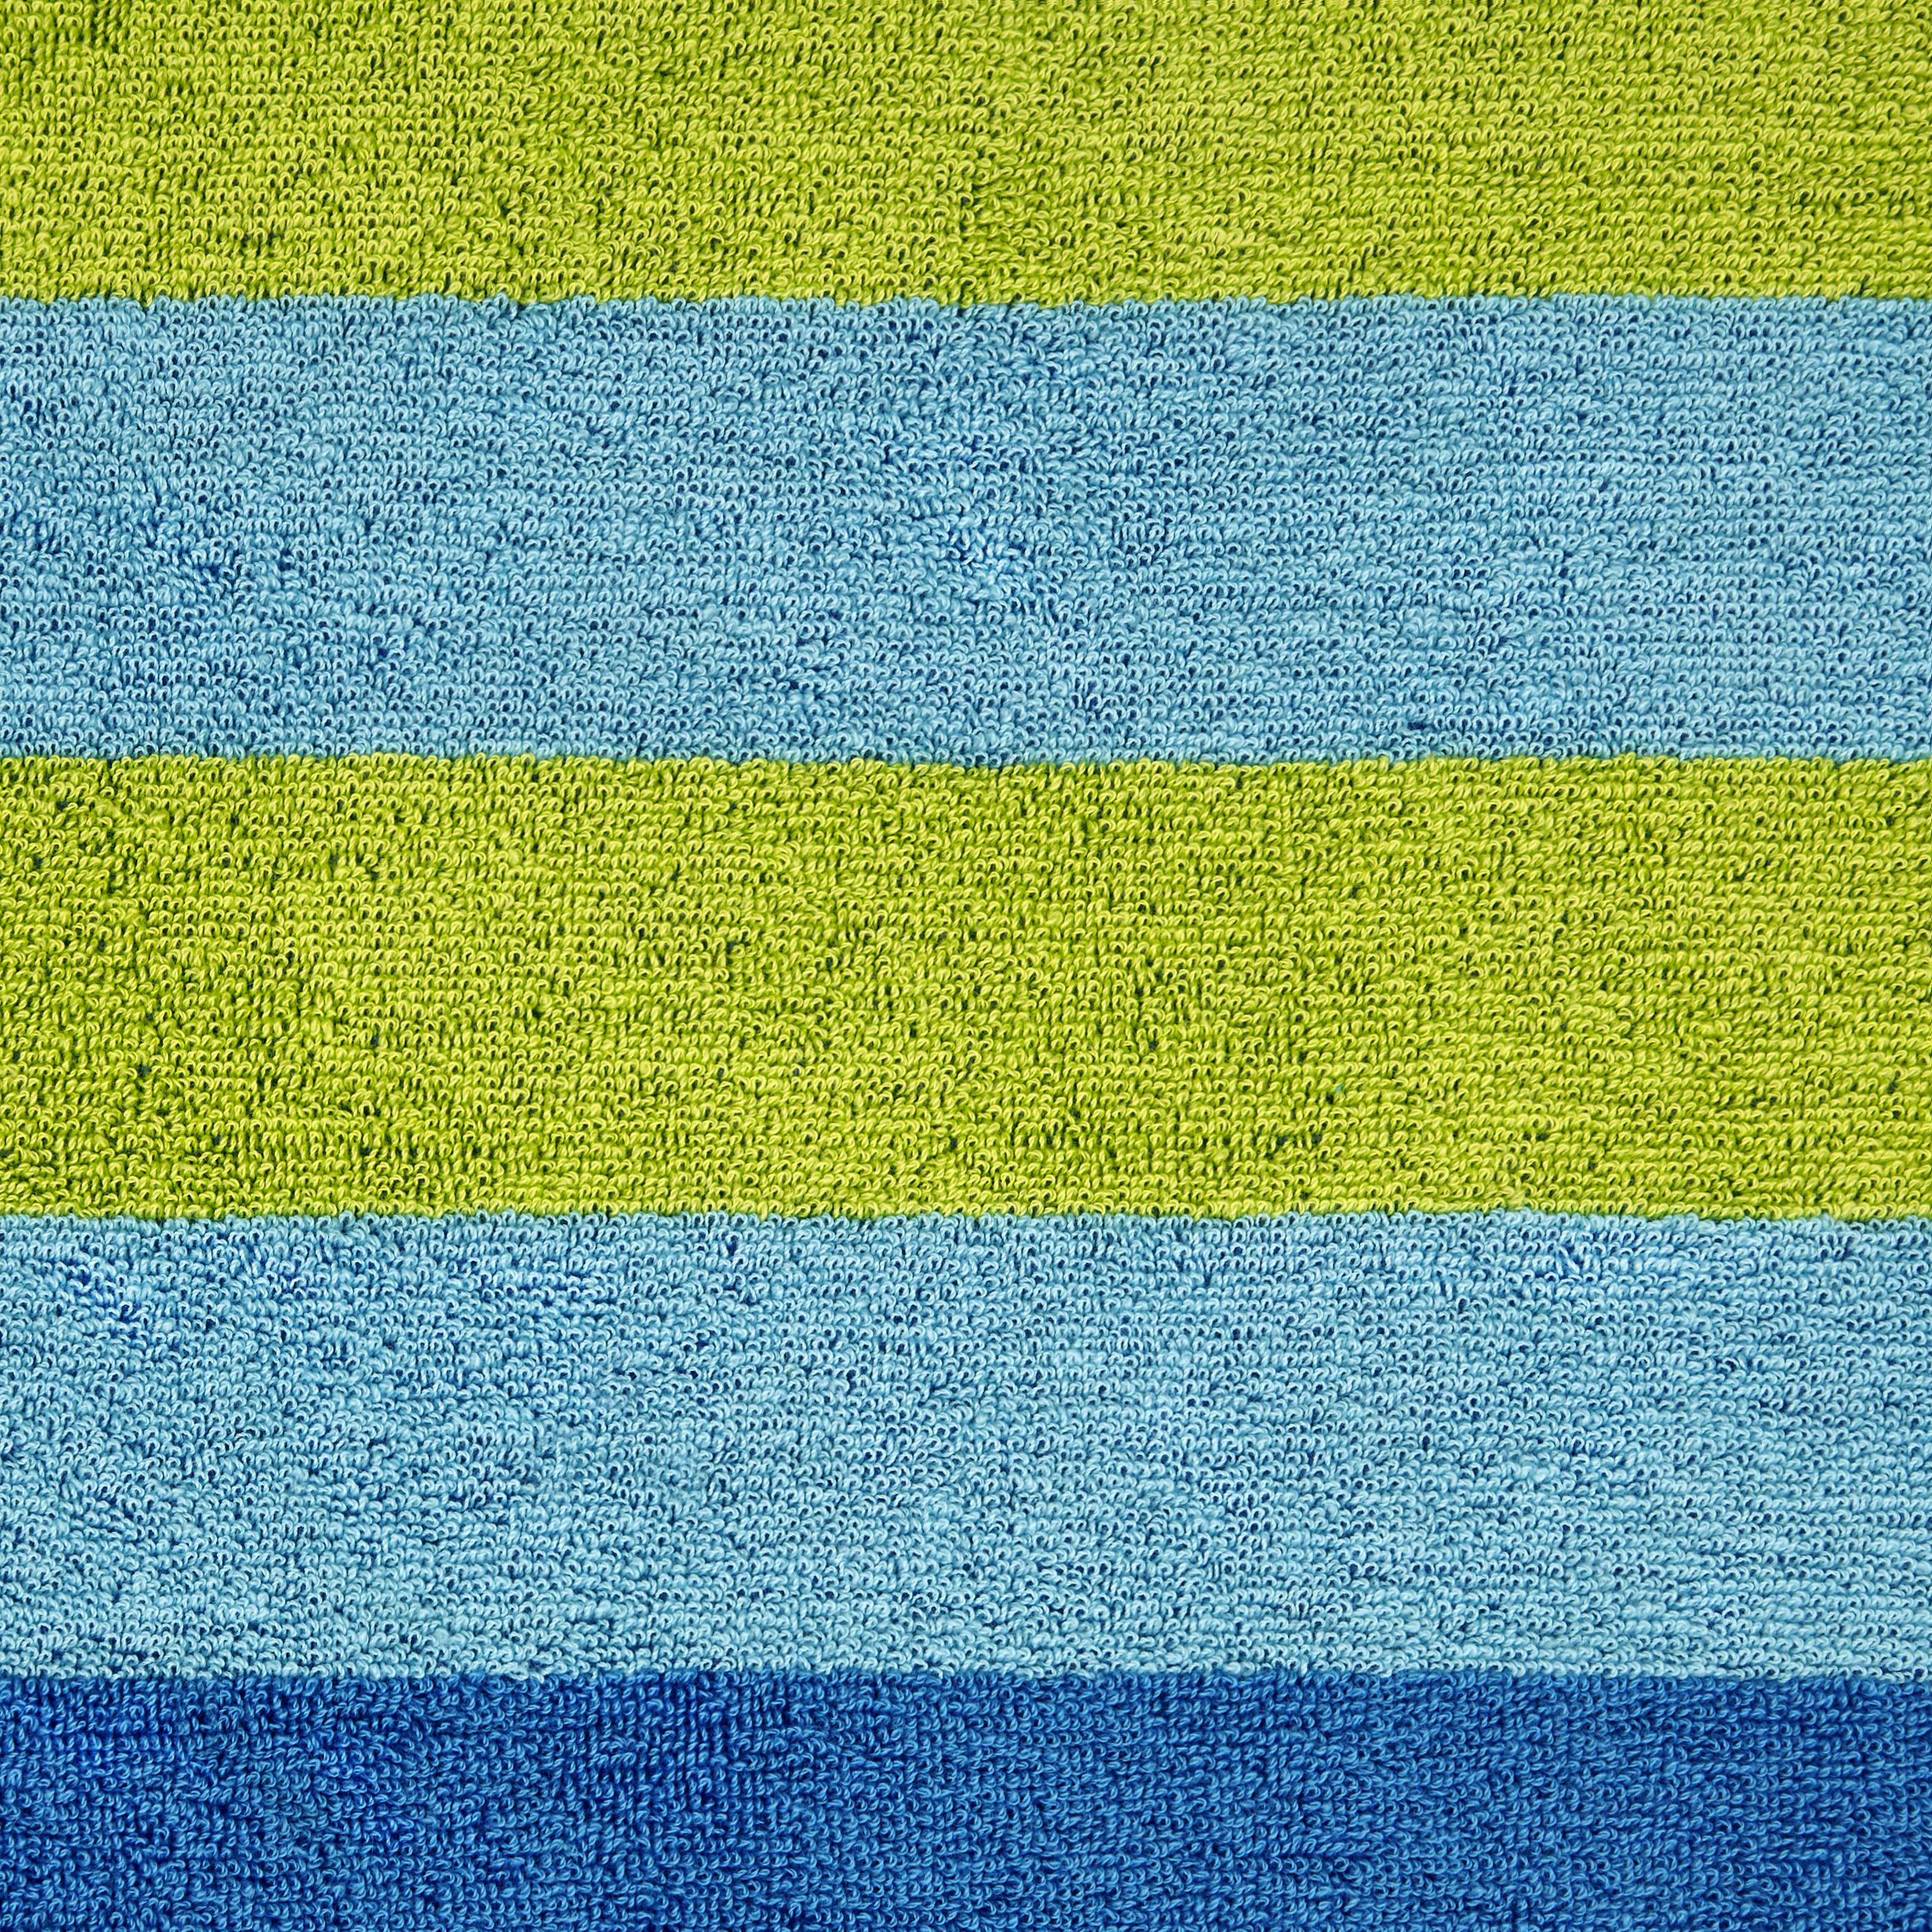 Strandtuch Dyckhoff ca. 70x180cm - Blau, KONVENTIONELL, Textil (70/180cm) - Dyckhoff